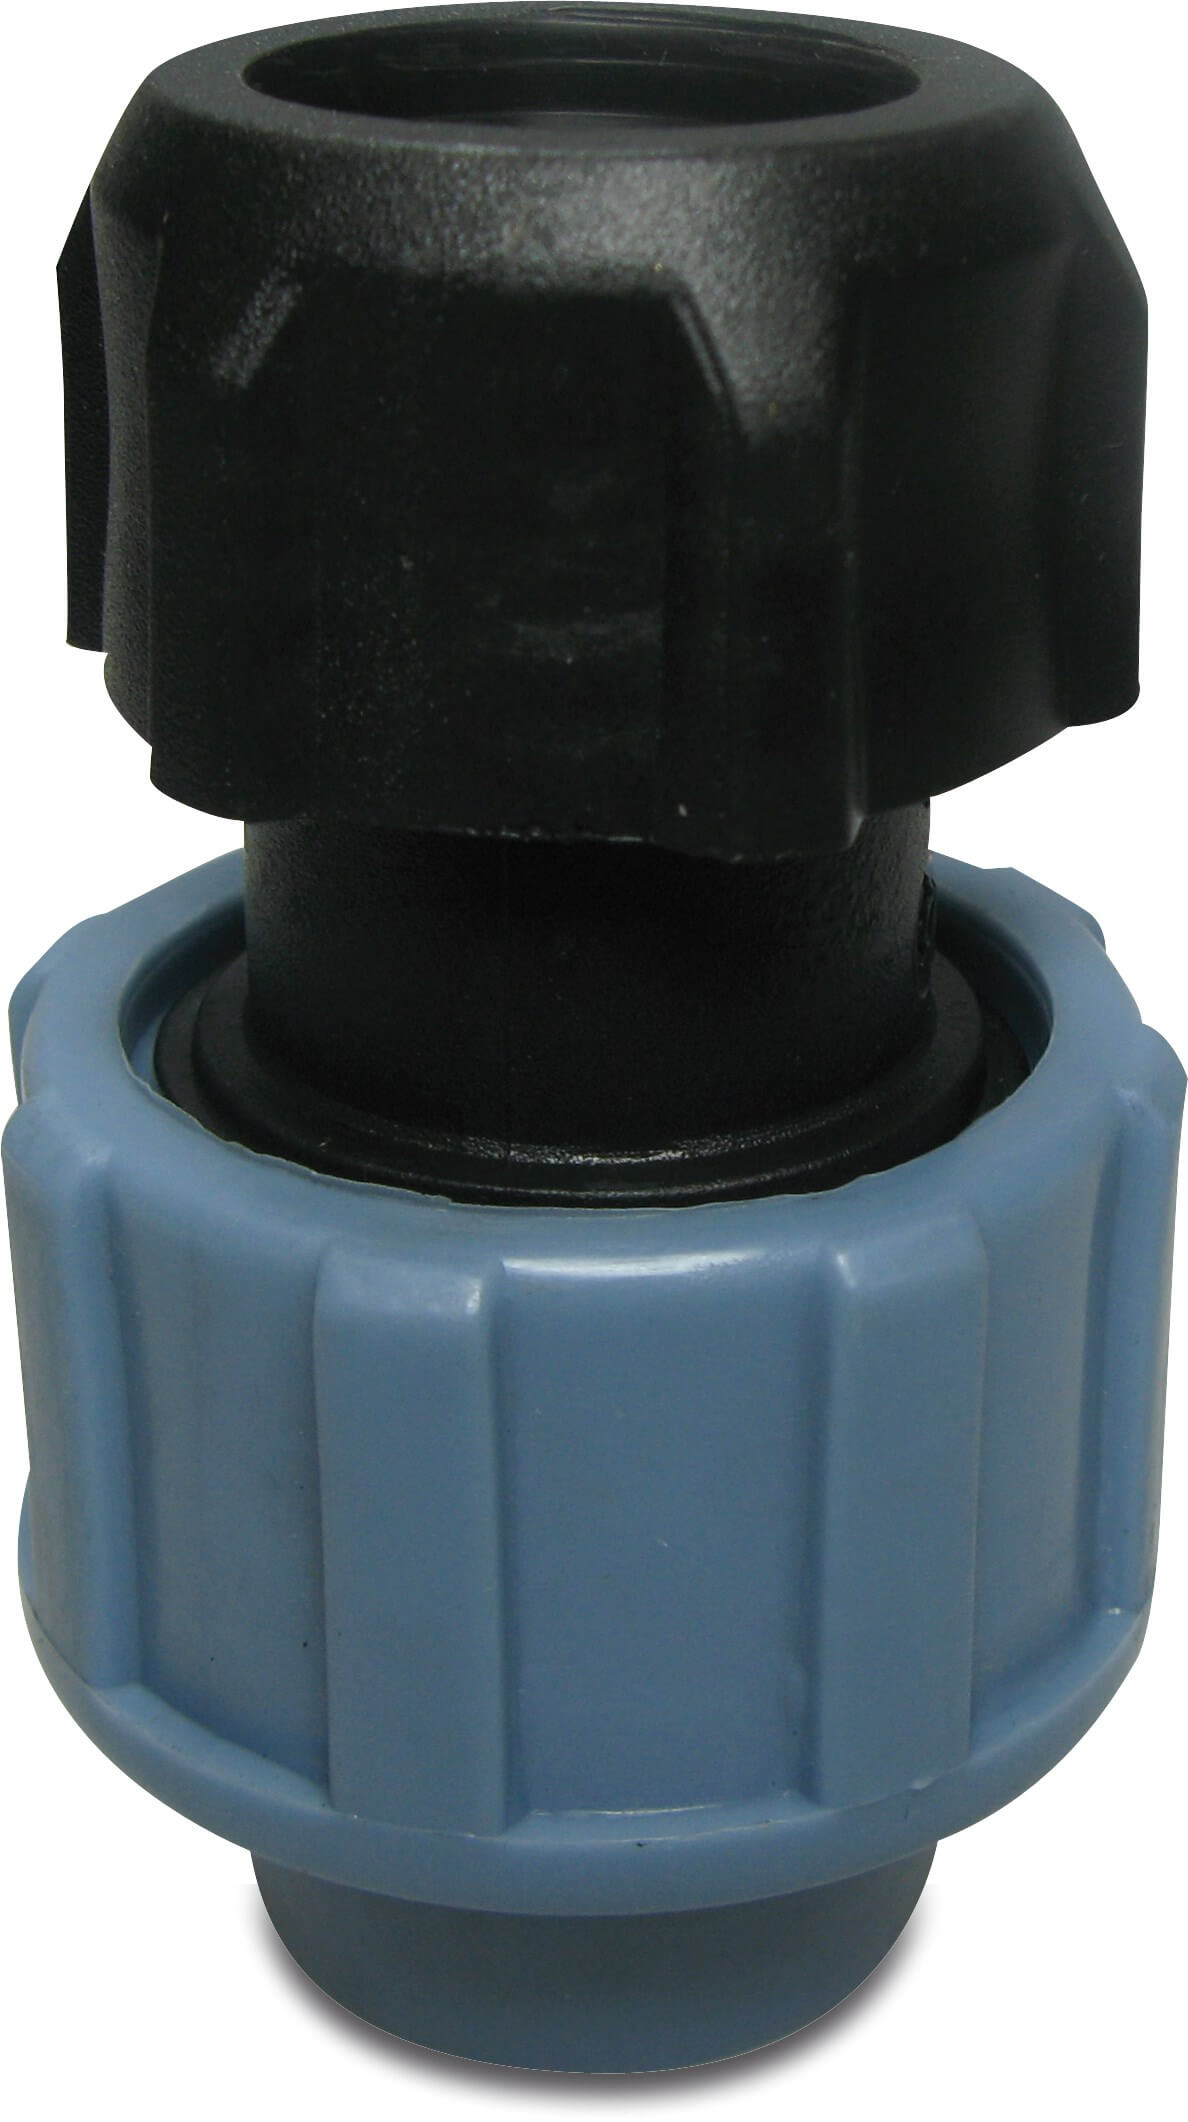 Unidelta Adaptor socket PP 20 mm x 1/2" compression x female thread 16bar black/blue DVGW/KIWA/WRAS